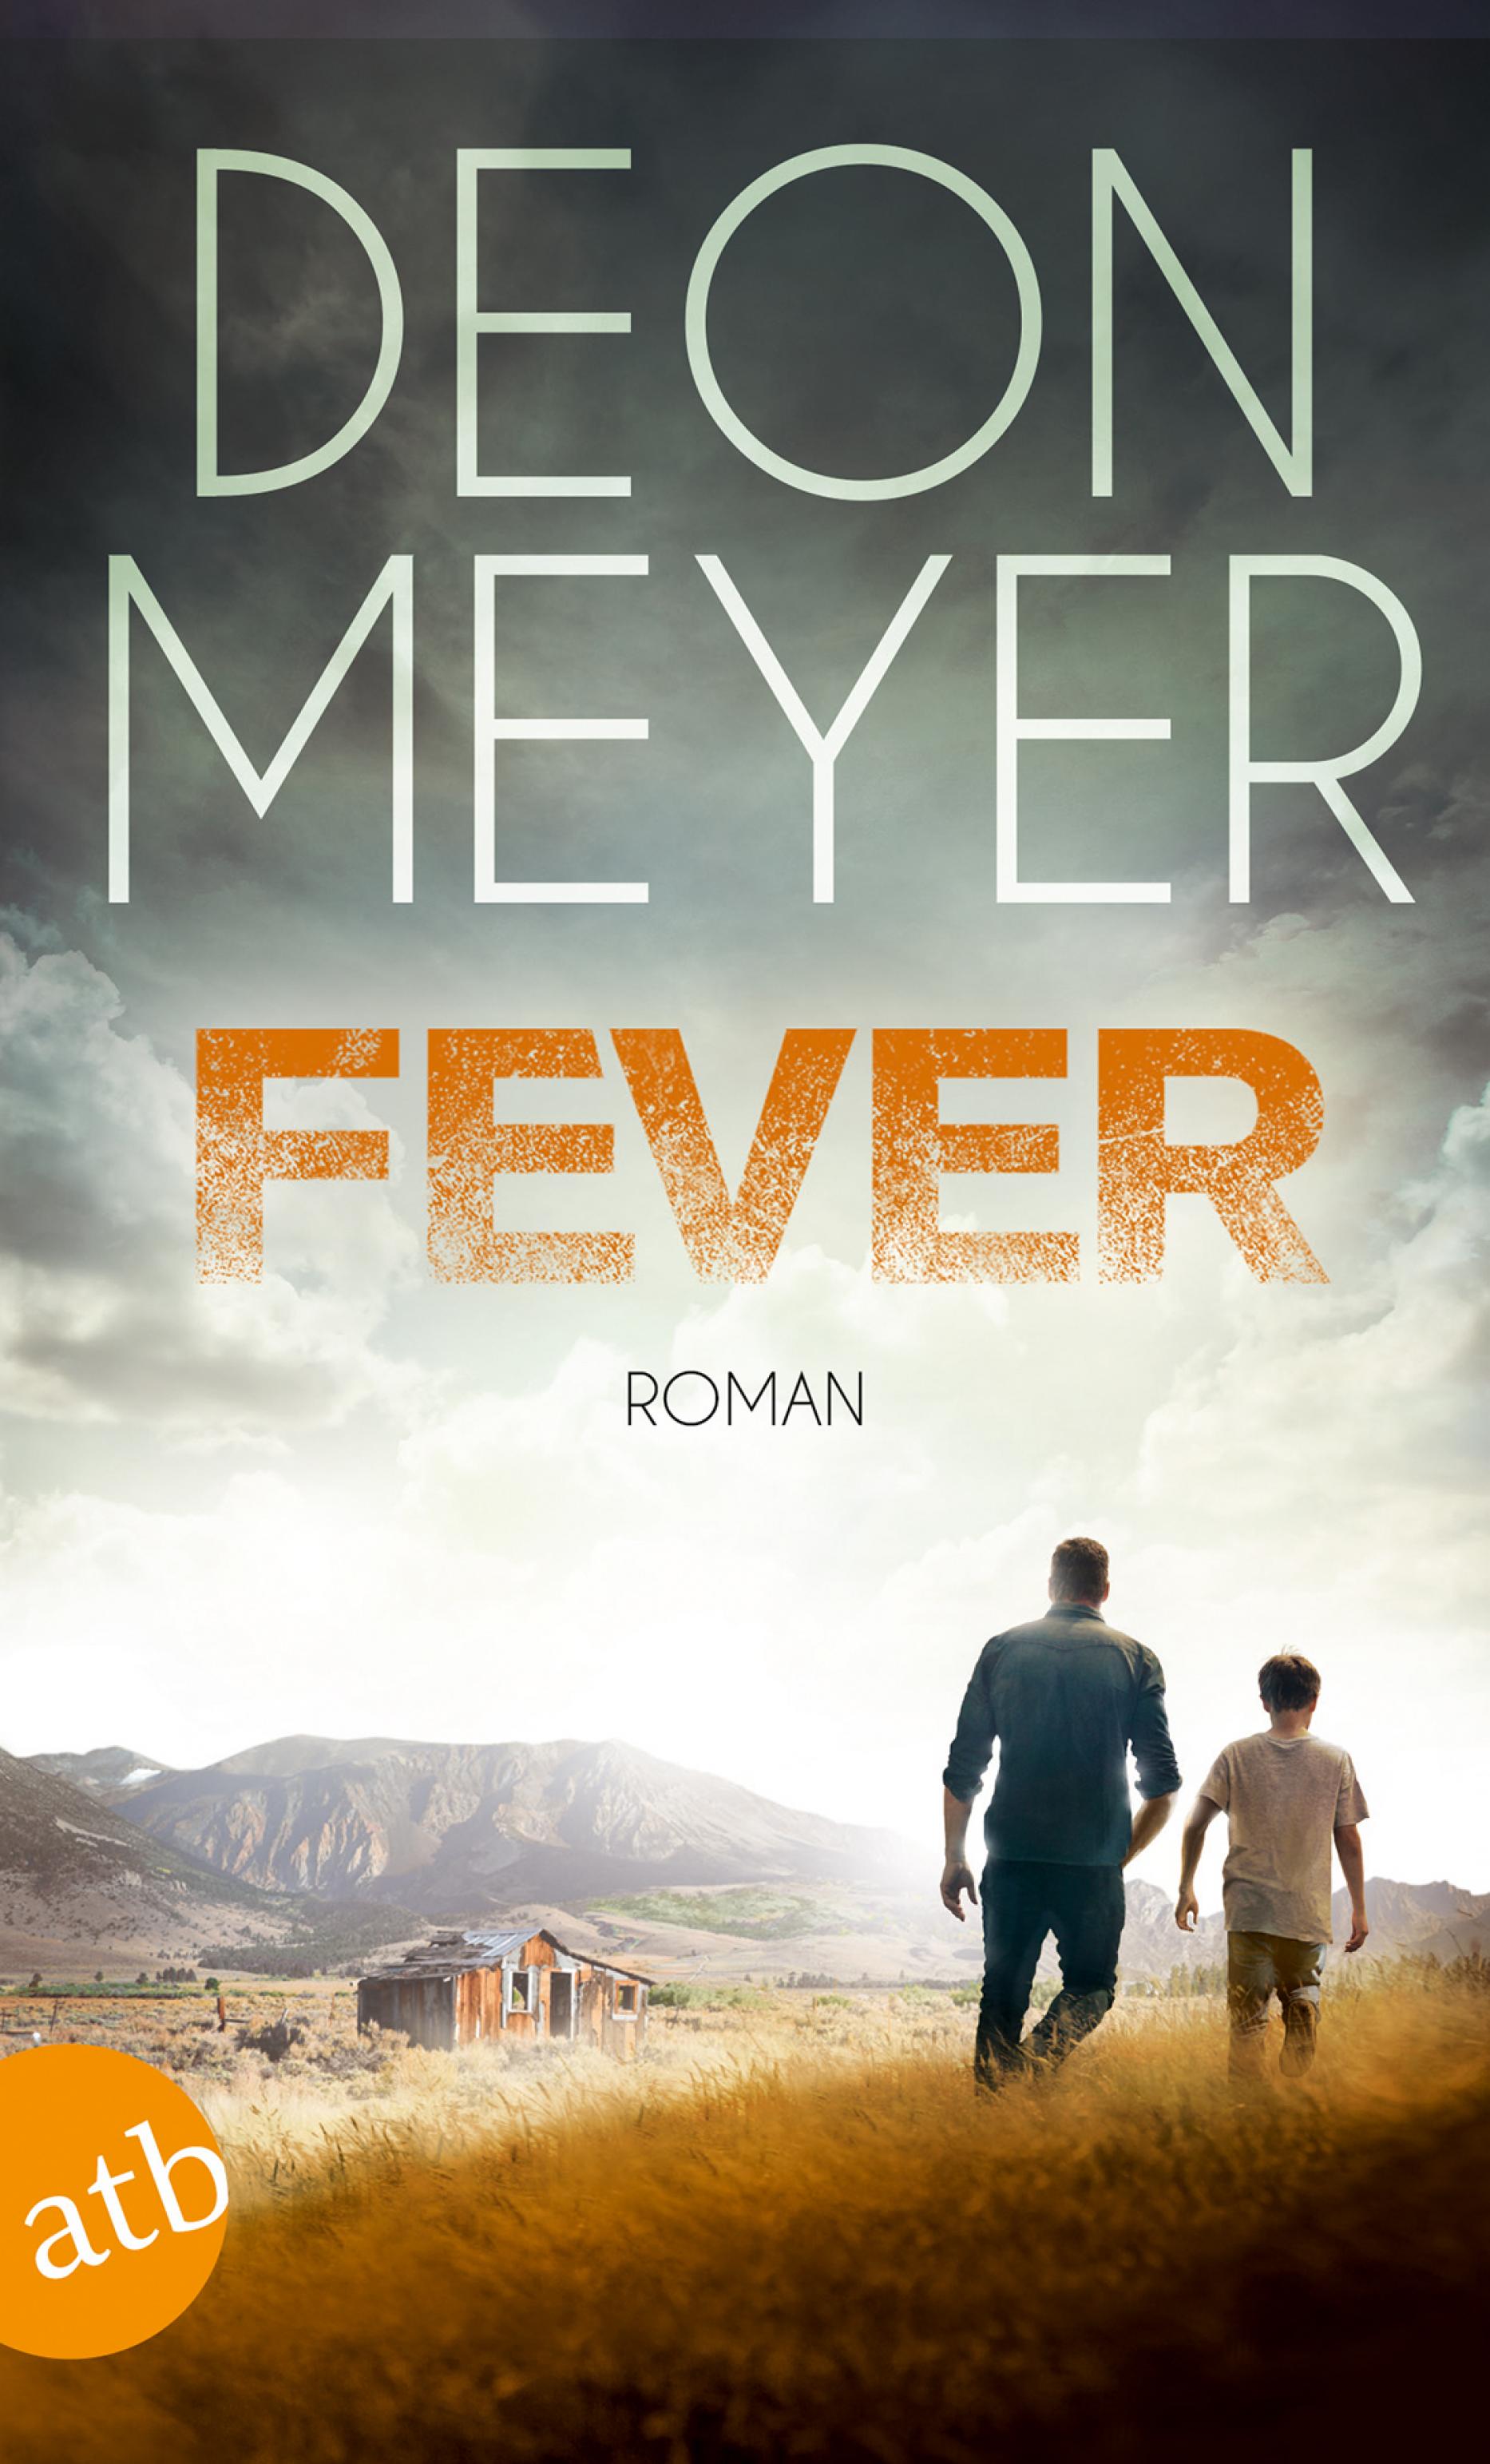 Coverbild von Fever von Deon Meyer